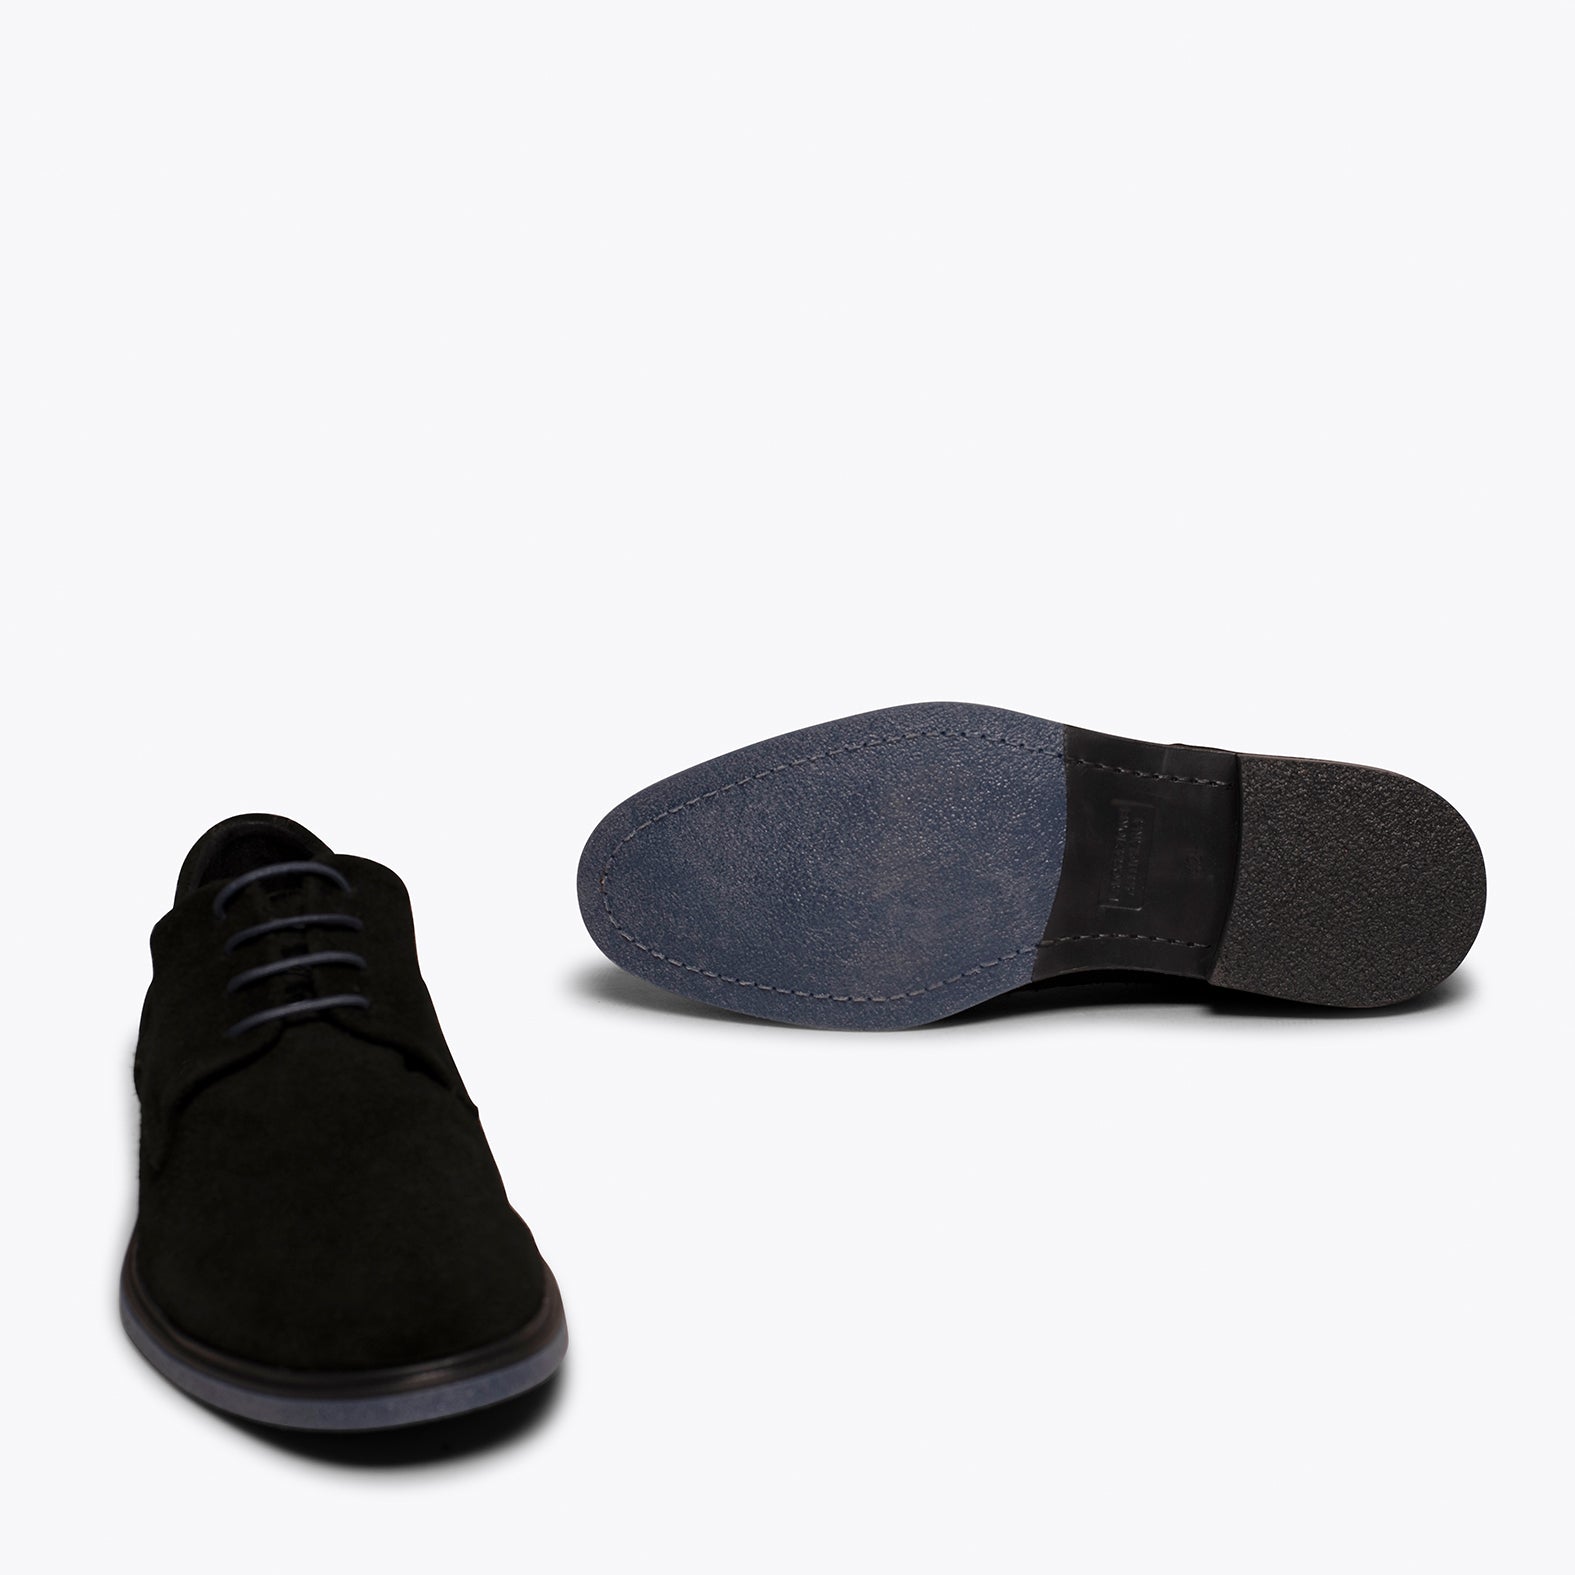 HARVARD- BLACK water-repellent shoe for men